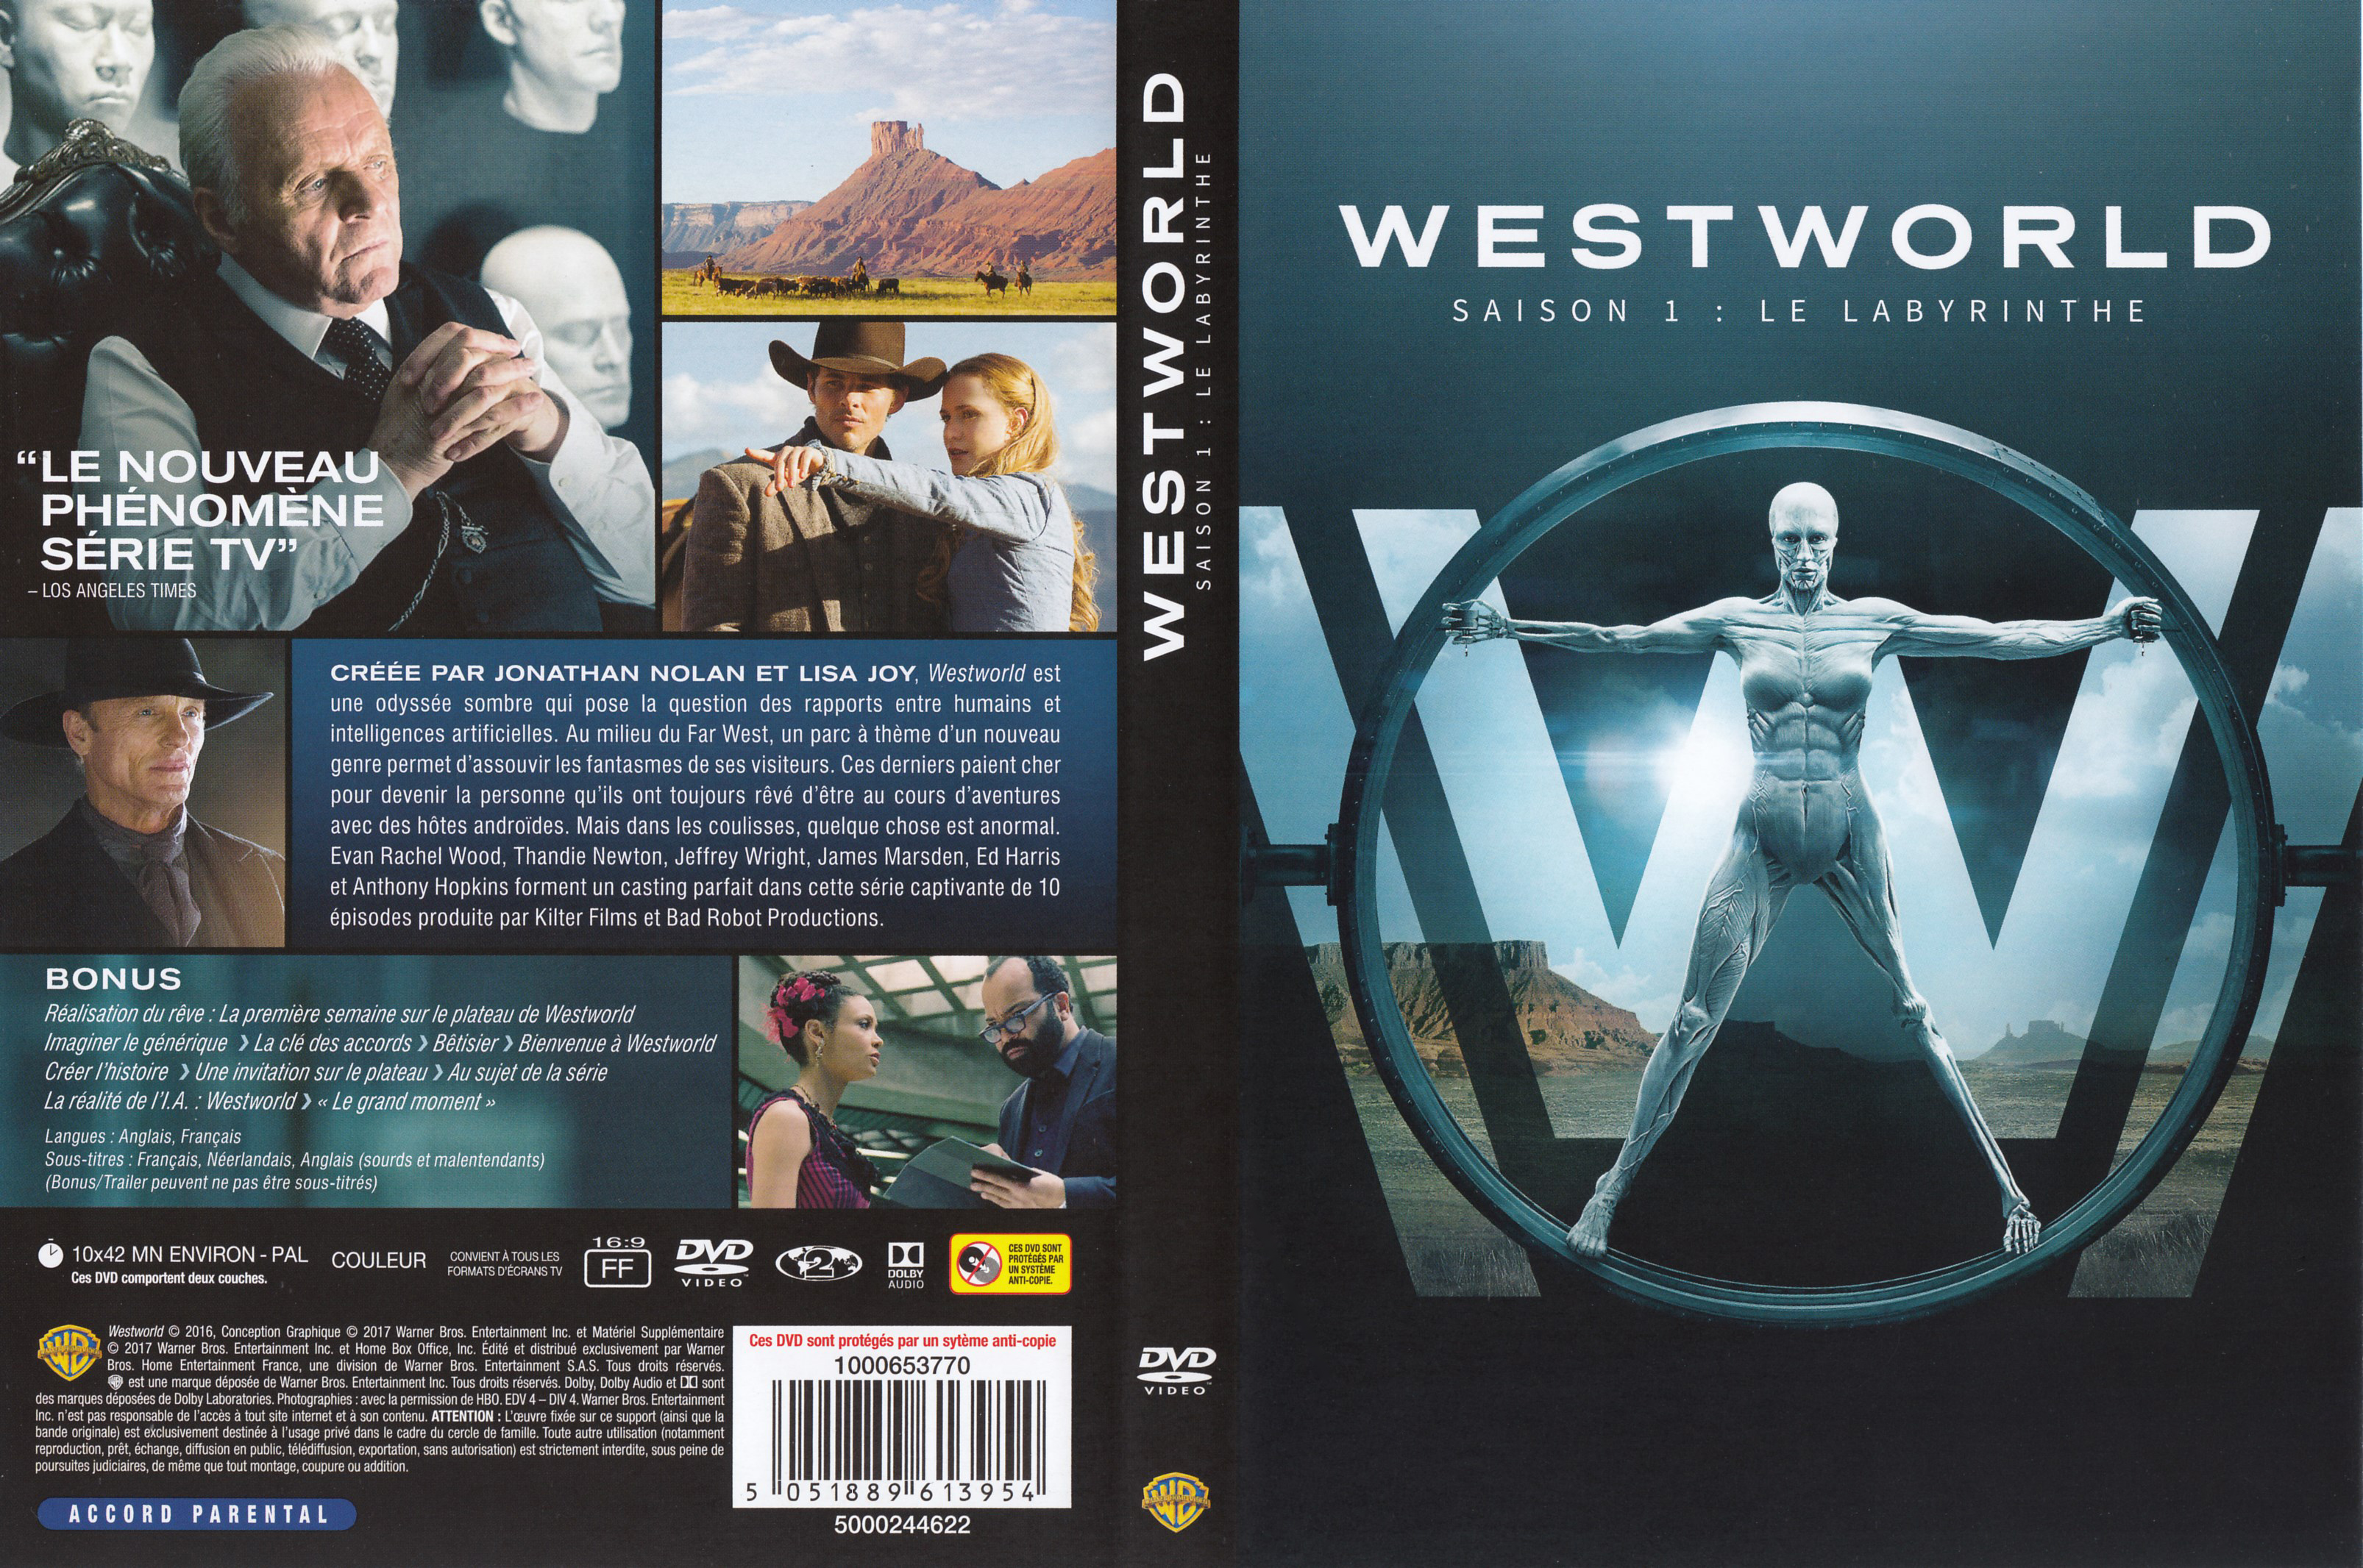 Jaquette DVD Westworld saison 1